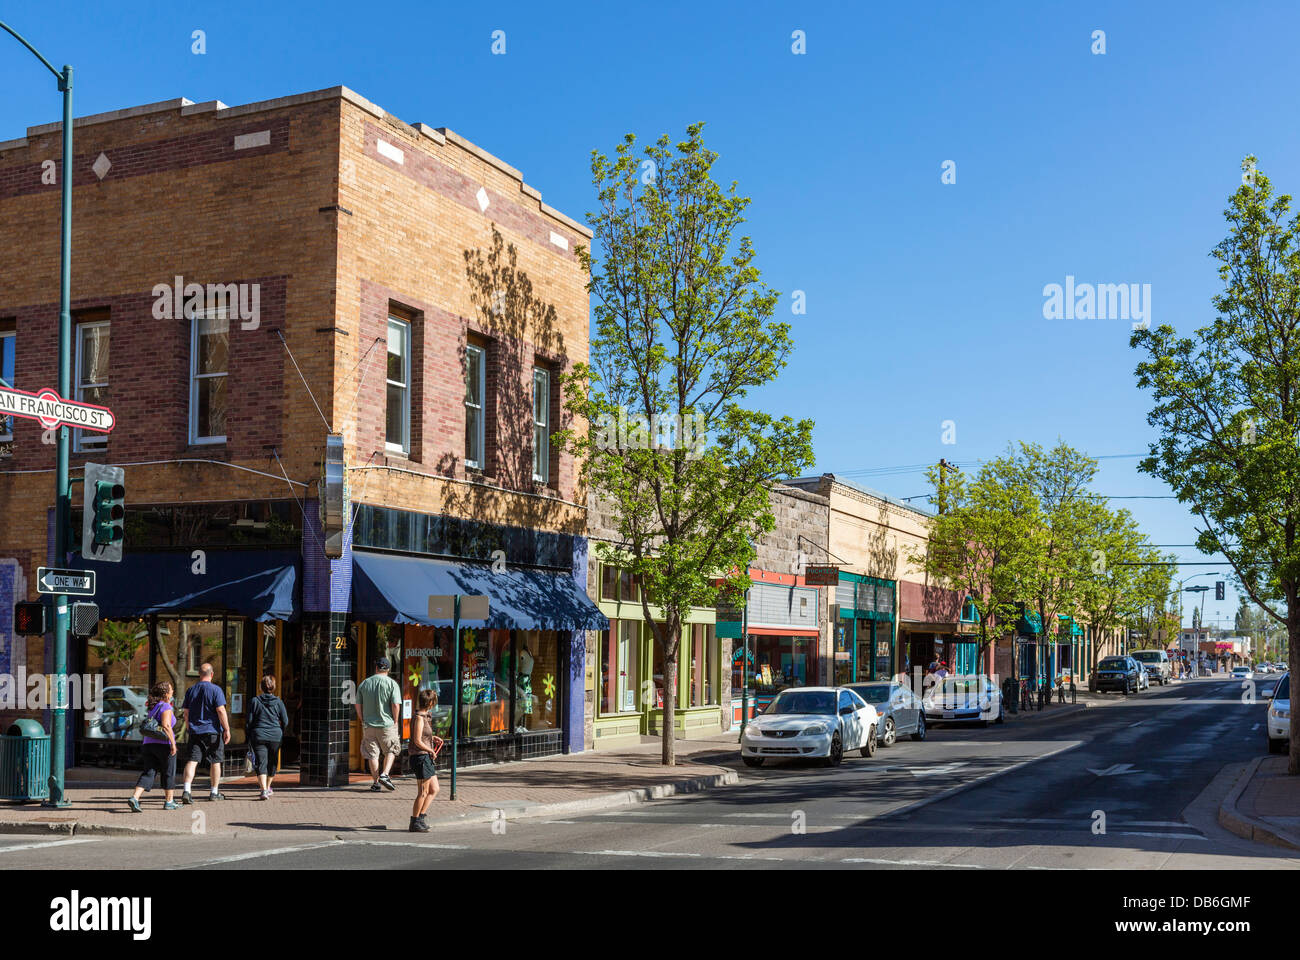 Stores on San Francisco Street in downtown Flagstaff, Arizona, USA Stock Photo